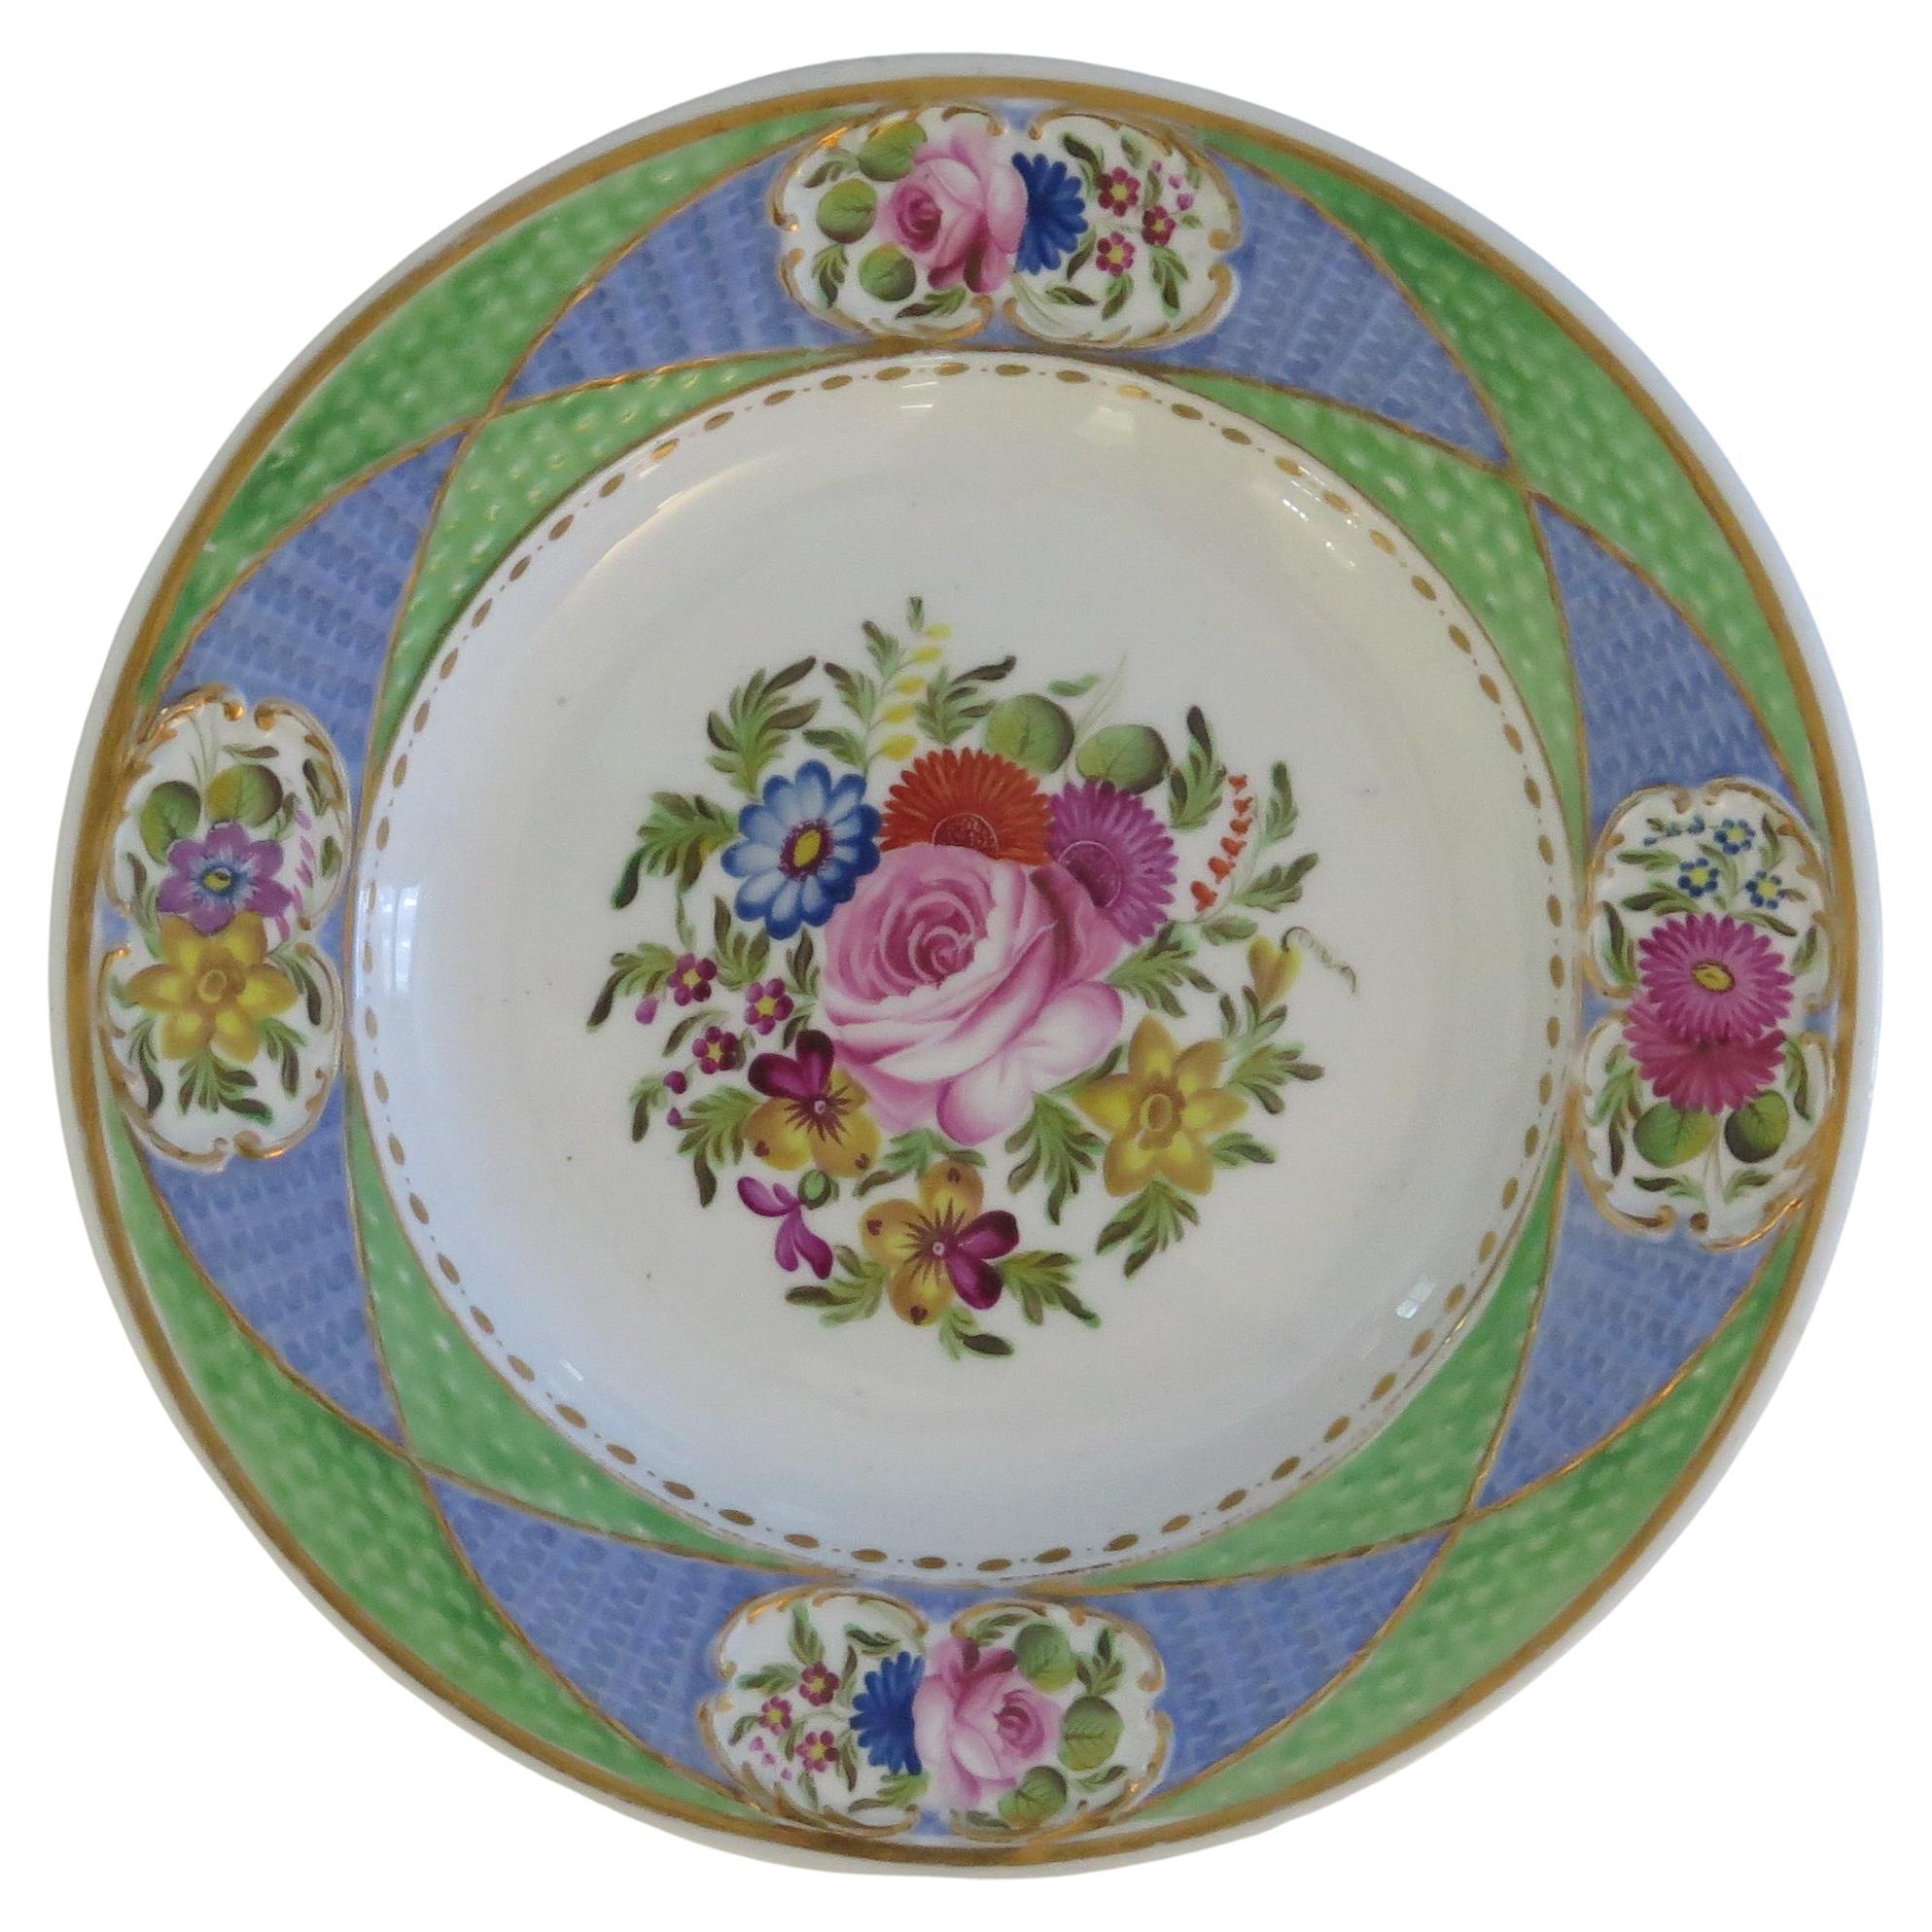 Assiette en porcelaine fine de Newhall à motif peint à la main 2050, géorgienne vers 1820